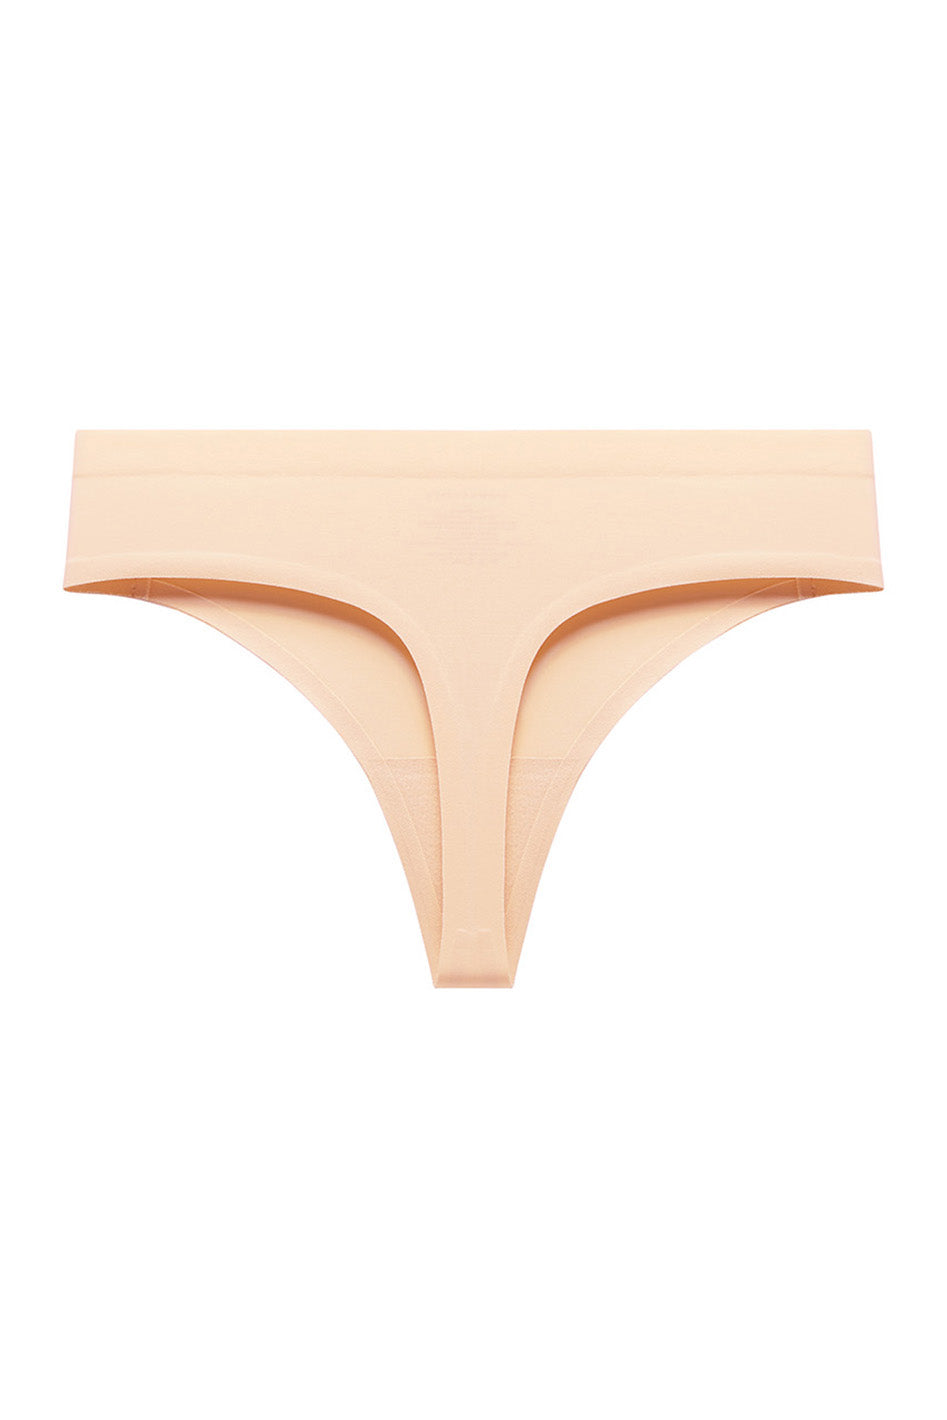 Seamless Beveled Glass Brief Underwear for Women